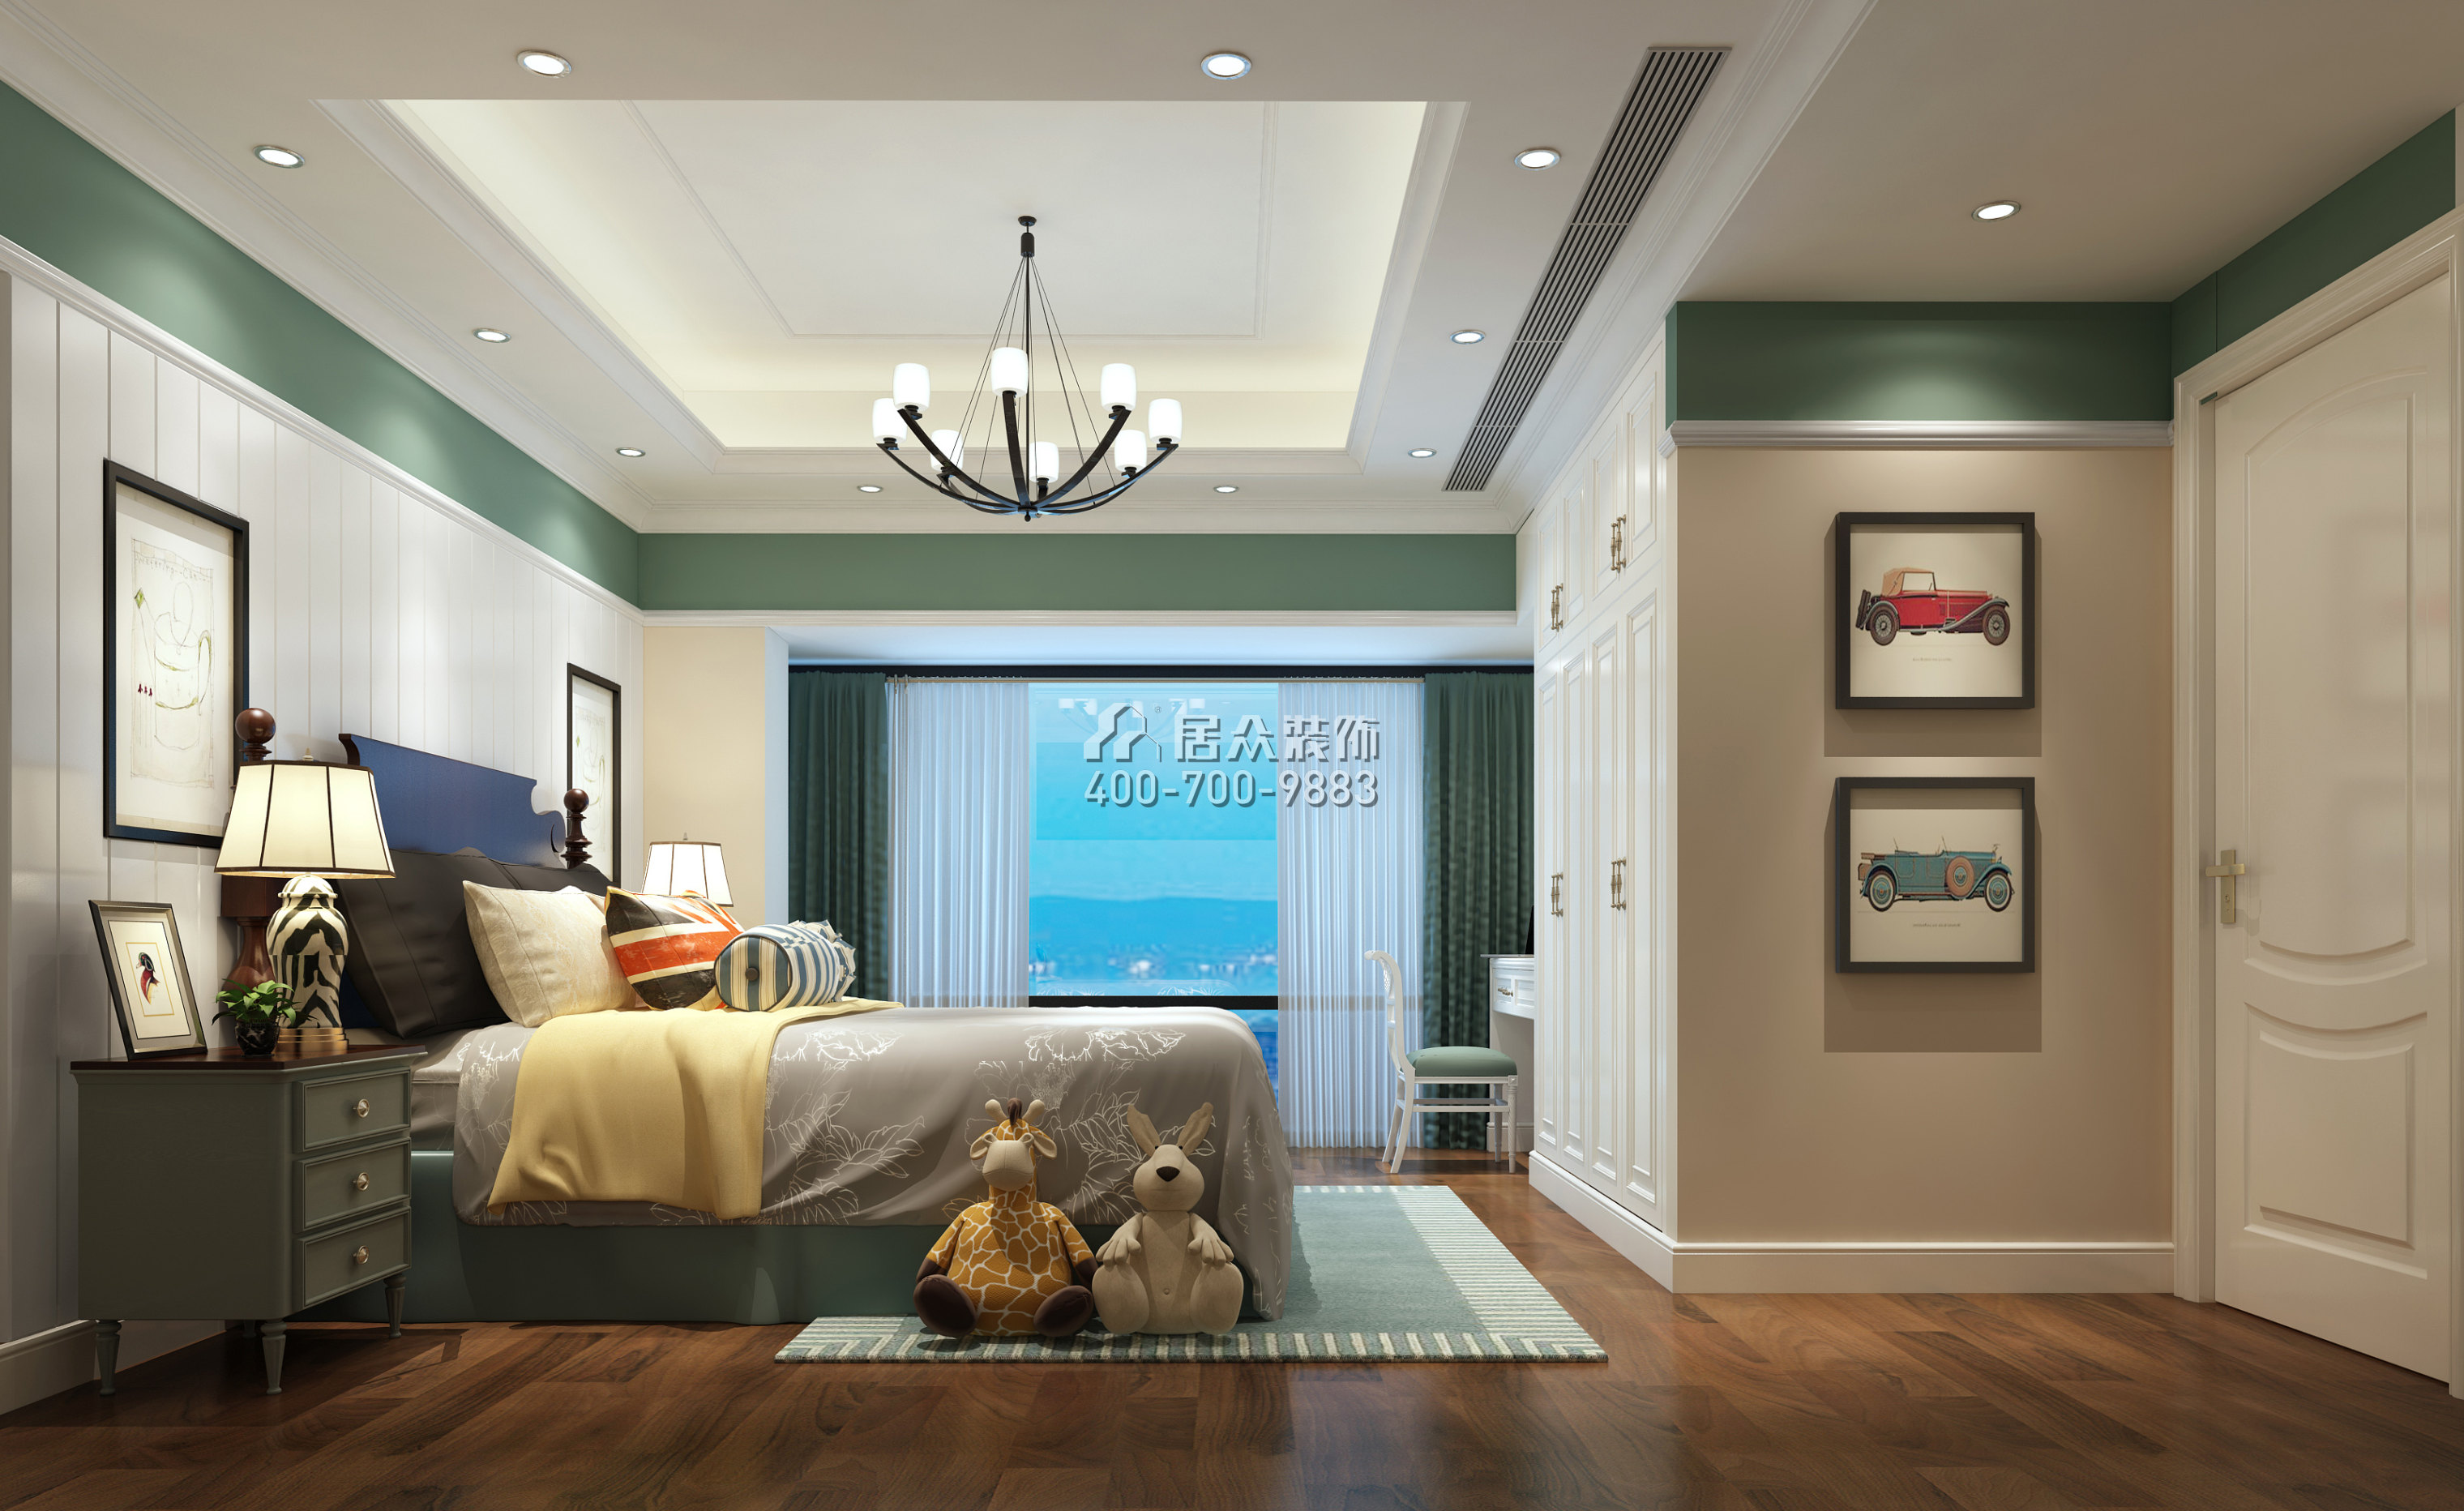 虹湾花园160平方米欧式风格平层户型卧室装修效果图